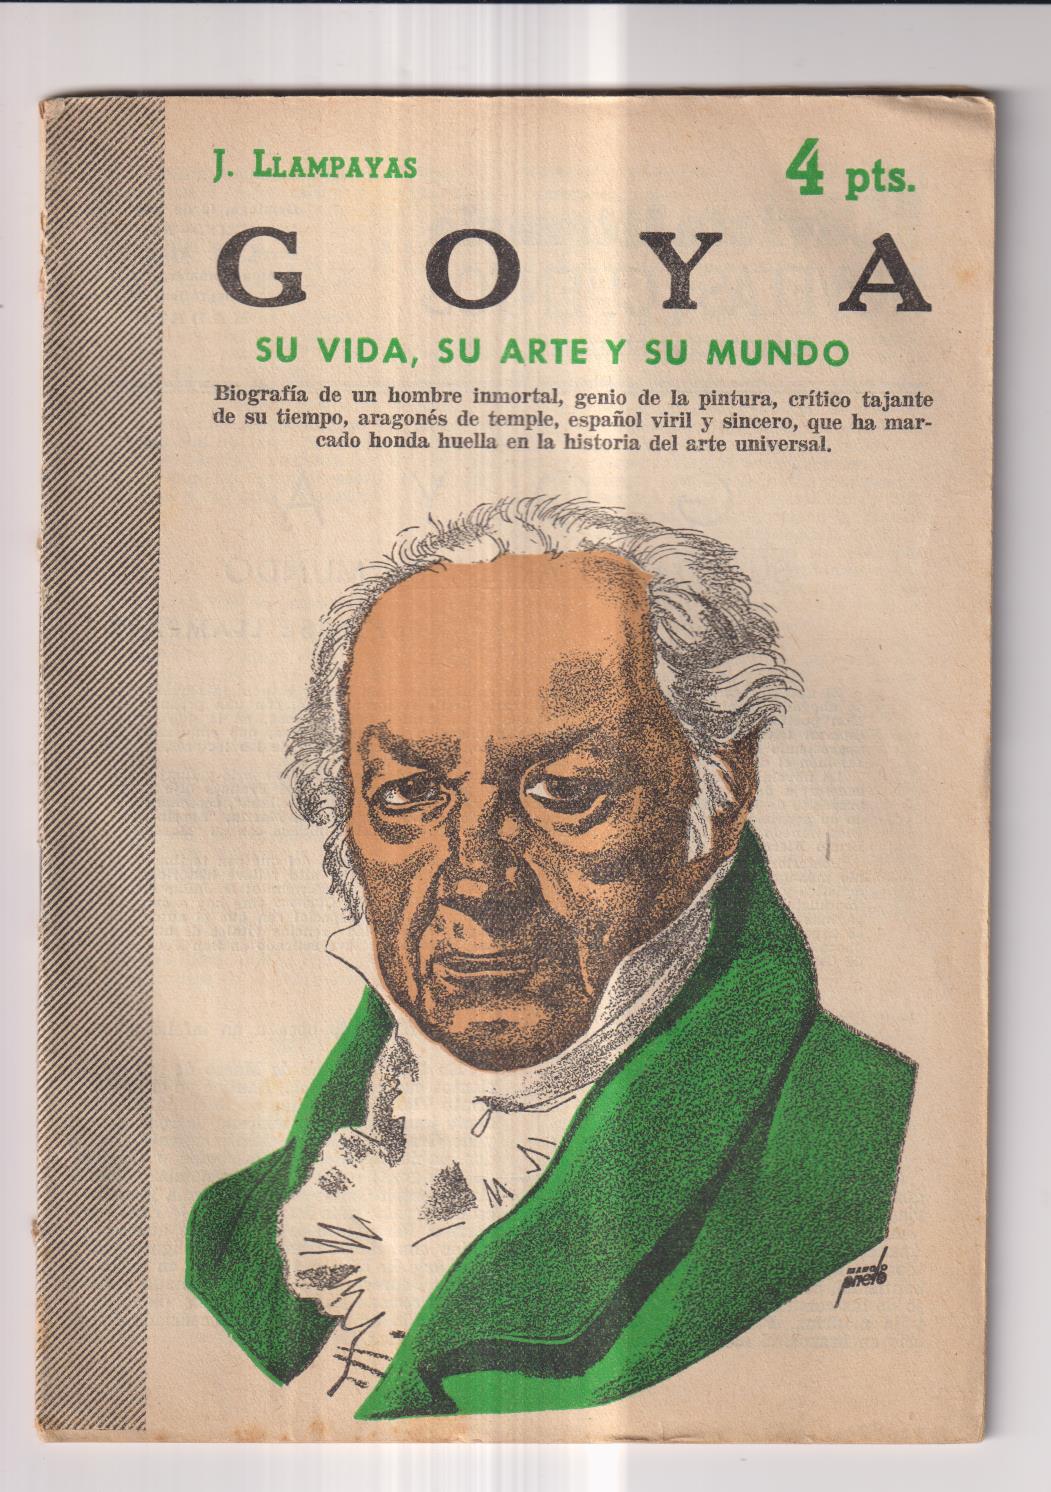 Revista Literaria Novelas y Cuentos nº 1357. J. Llampayas. Goya, su vida su arte, su mundo